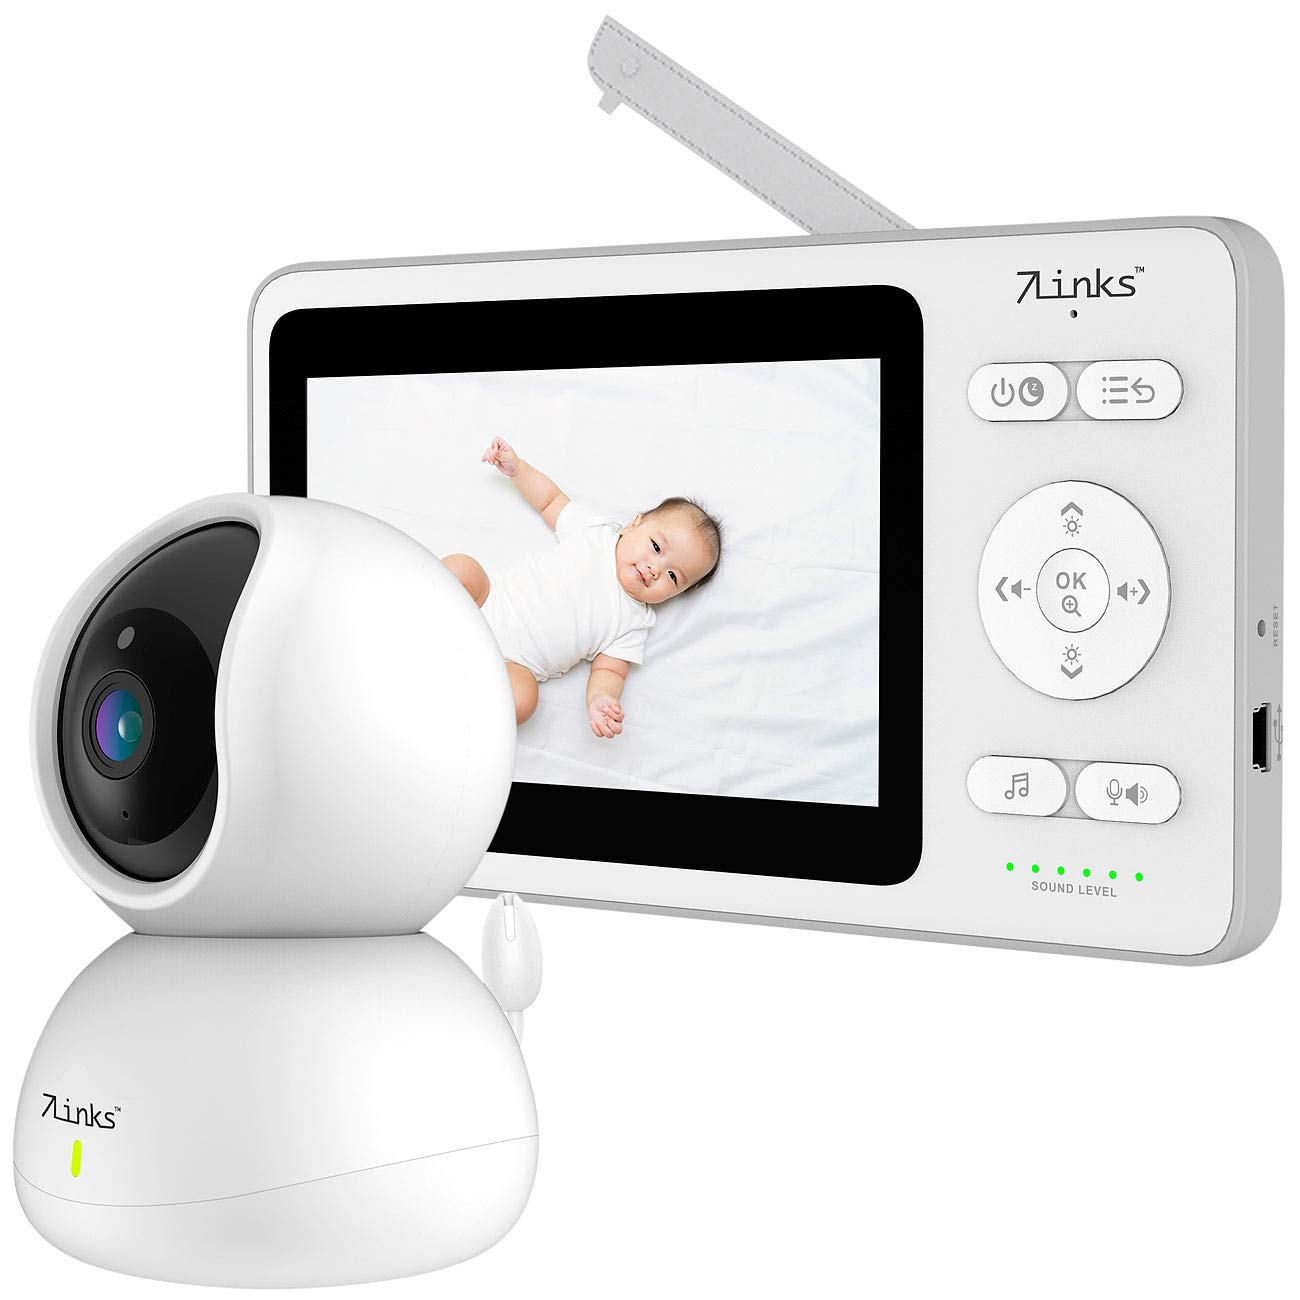 7links Babyfon: Video-Babyphone, dreh- & schwenkbare Kamera, 11 cm (4,3") Farbdisplay (Babyüberwachung, Baby Monitor, Videoüberwachung)